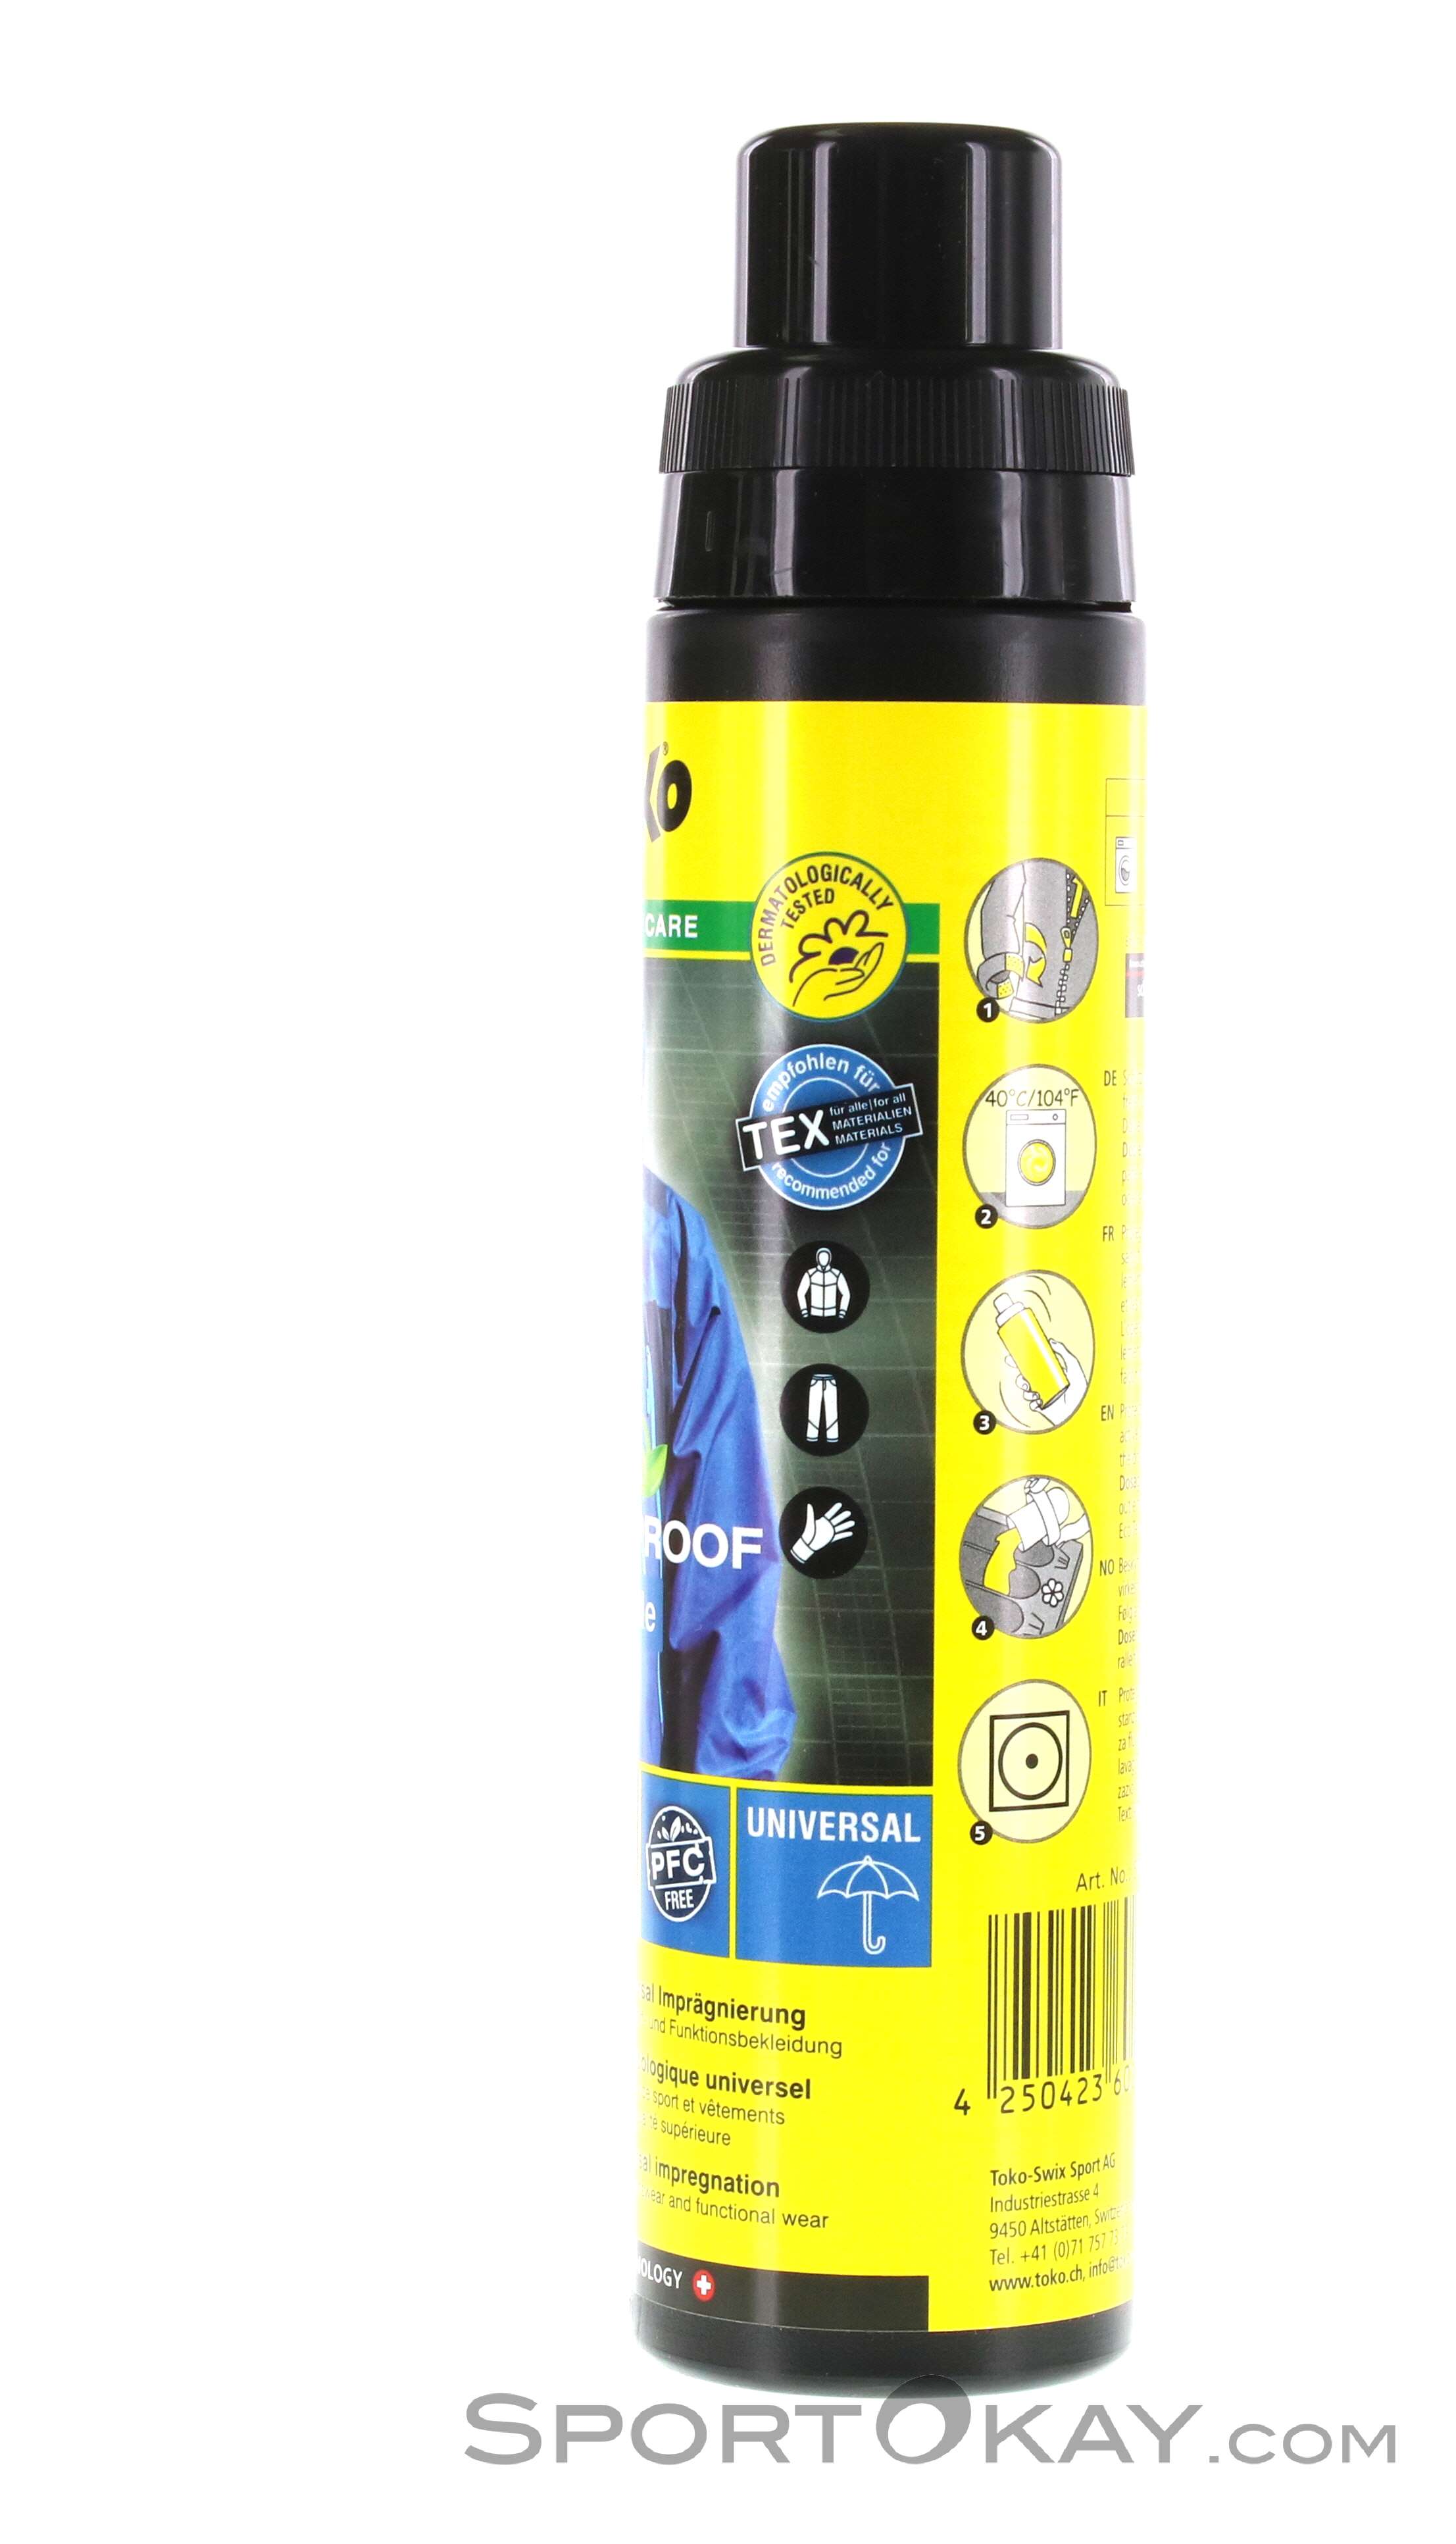 Toko Repair Candle 6mm graphite Réparation de revêtement - Produit